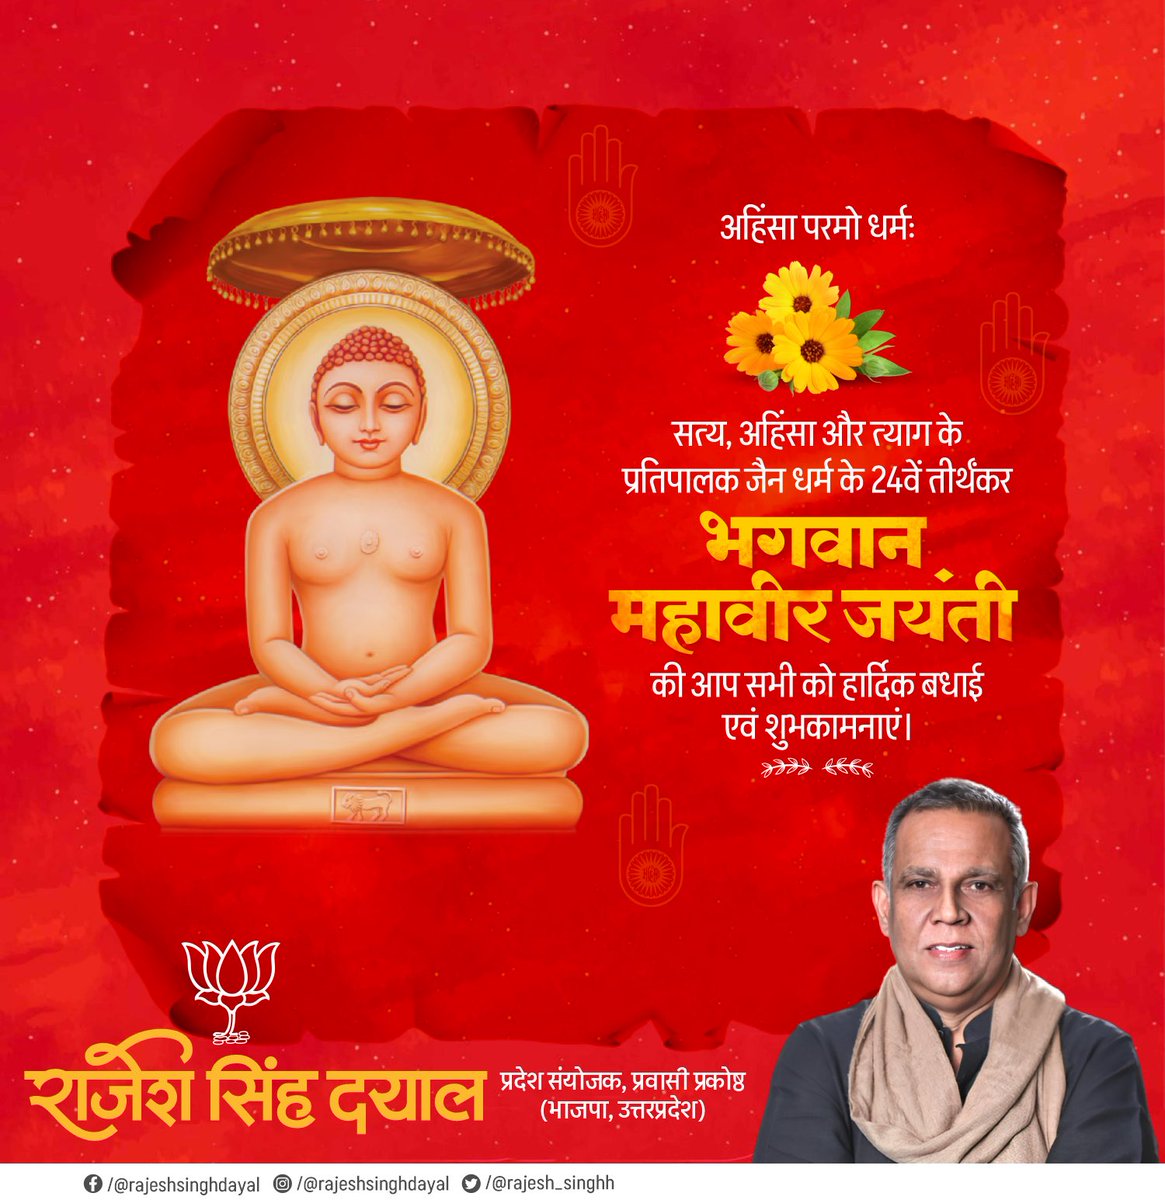 सत्य, अहिंसा और शांति का पथ प्रदर्शित करने वाले 24वें तीर्थंकर, भगवान महावीर जयंती की आप सभी को ढेरों शुभकामनाएं।
#MahaveerJayanti